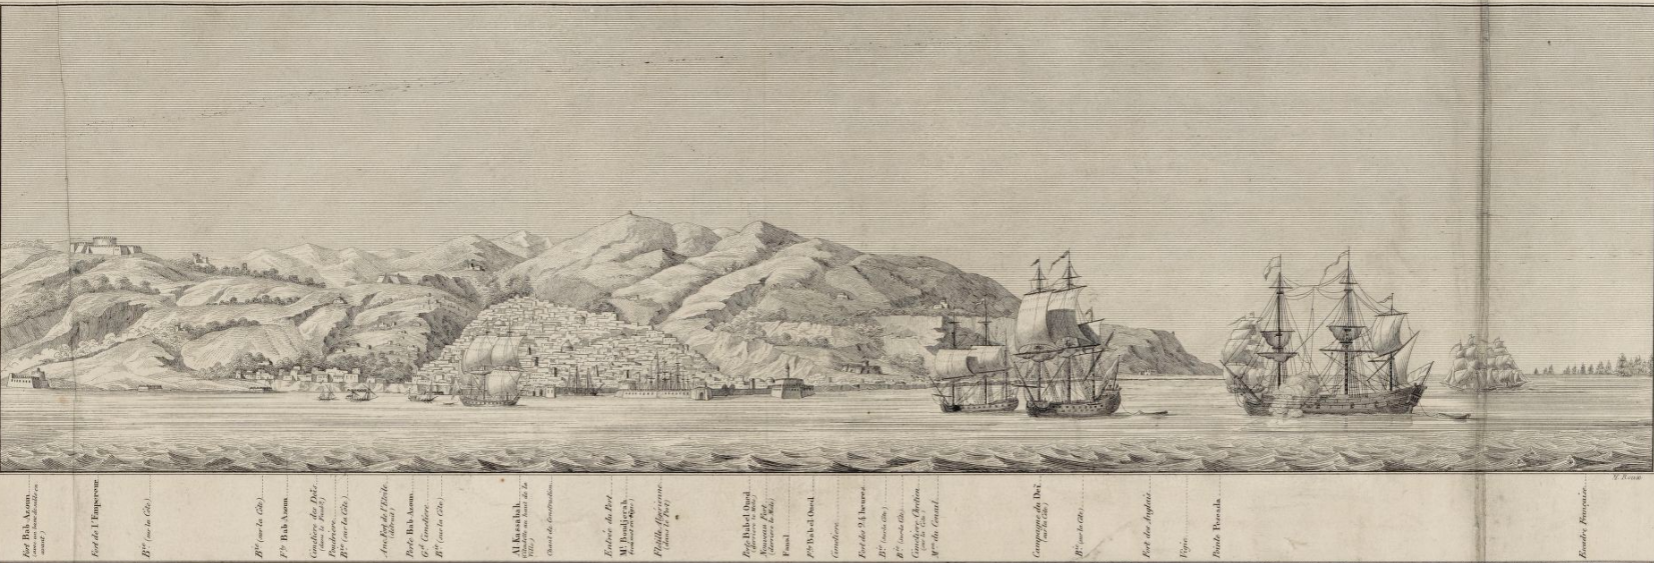 Grabado de la conquista francesa de Argel (1830). Fuente Bibliothèque Nationale de France